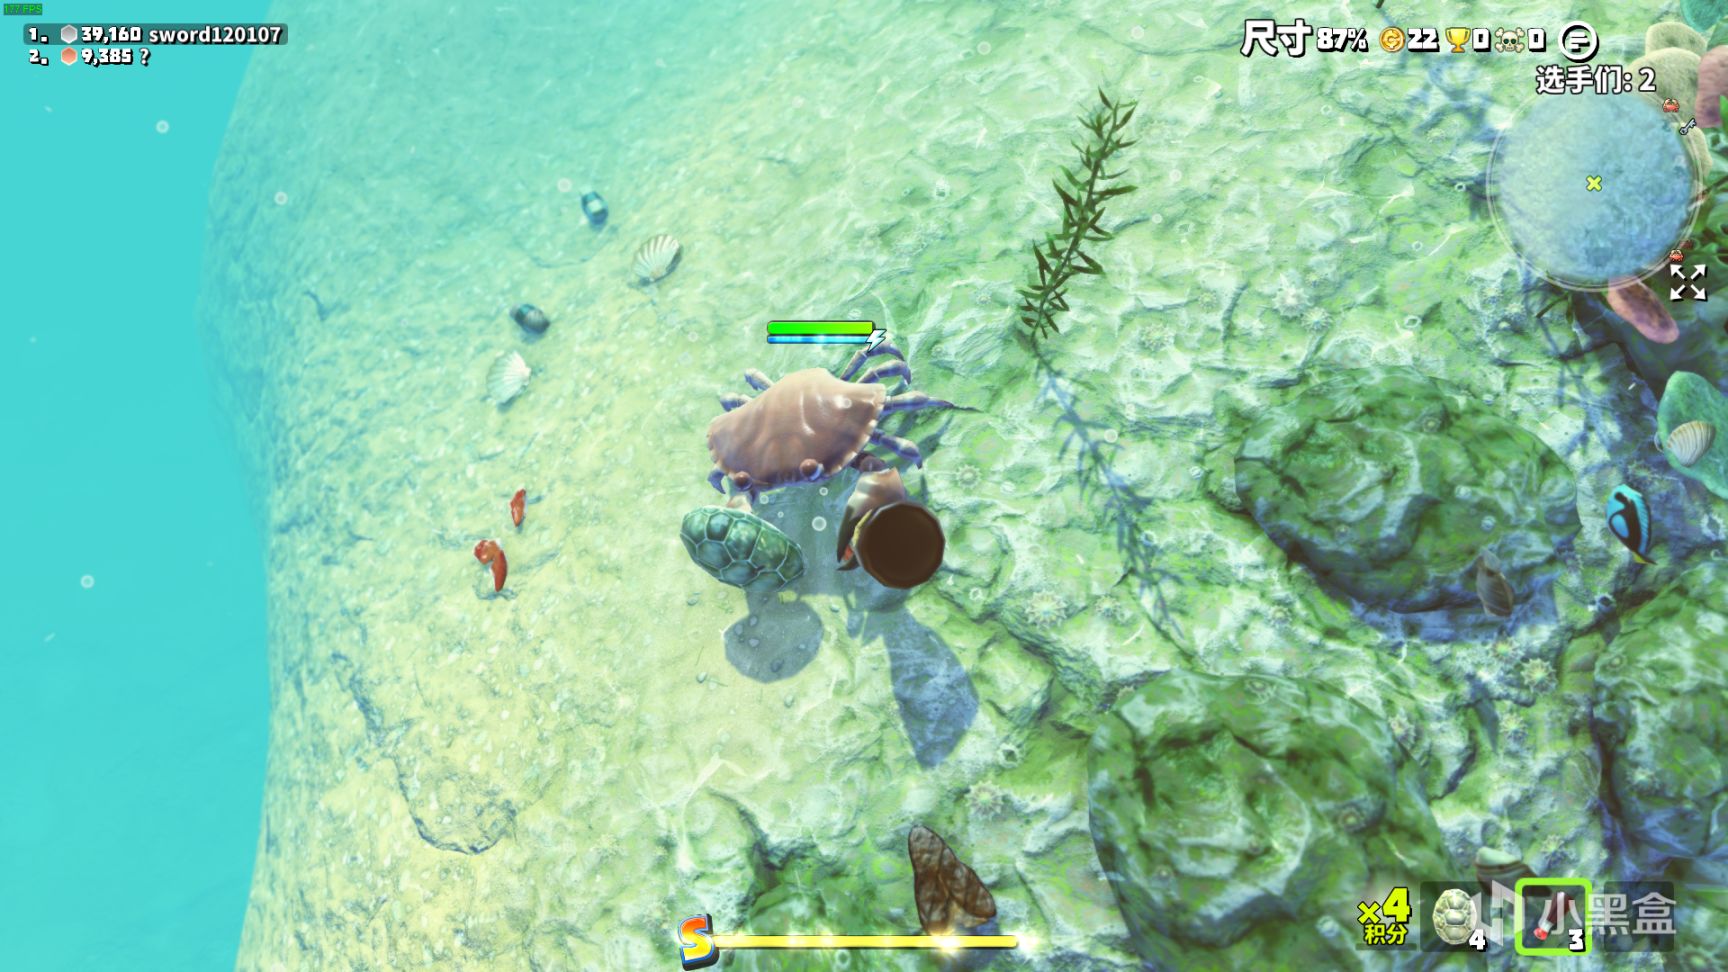 【PC游戏】steam免费有趣游戏《King of Crabs 螃蟹之王》无限欢乐，来吖 一起快乐鸭~-第19张